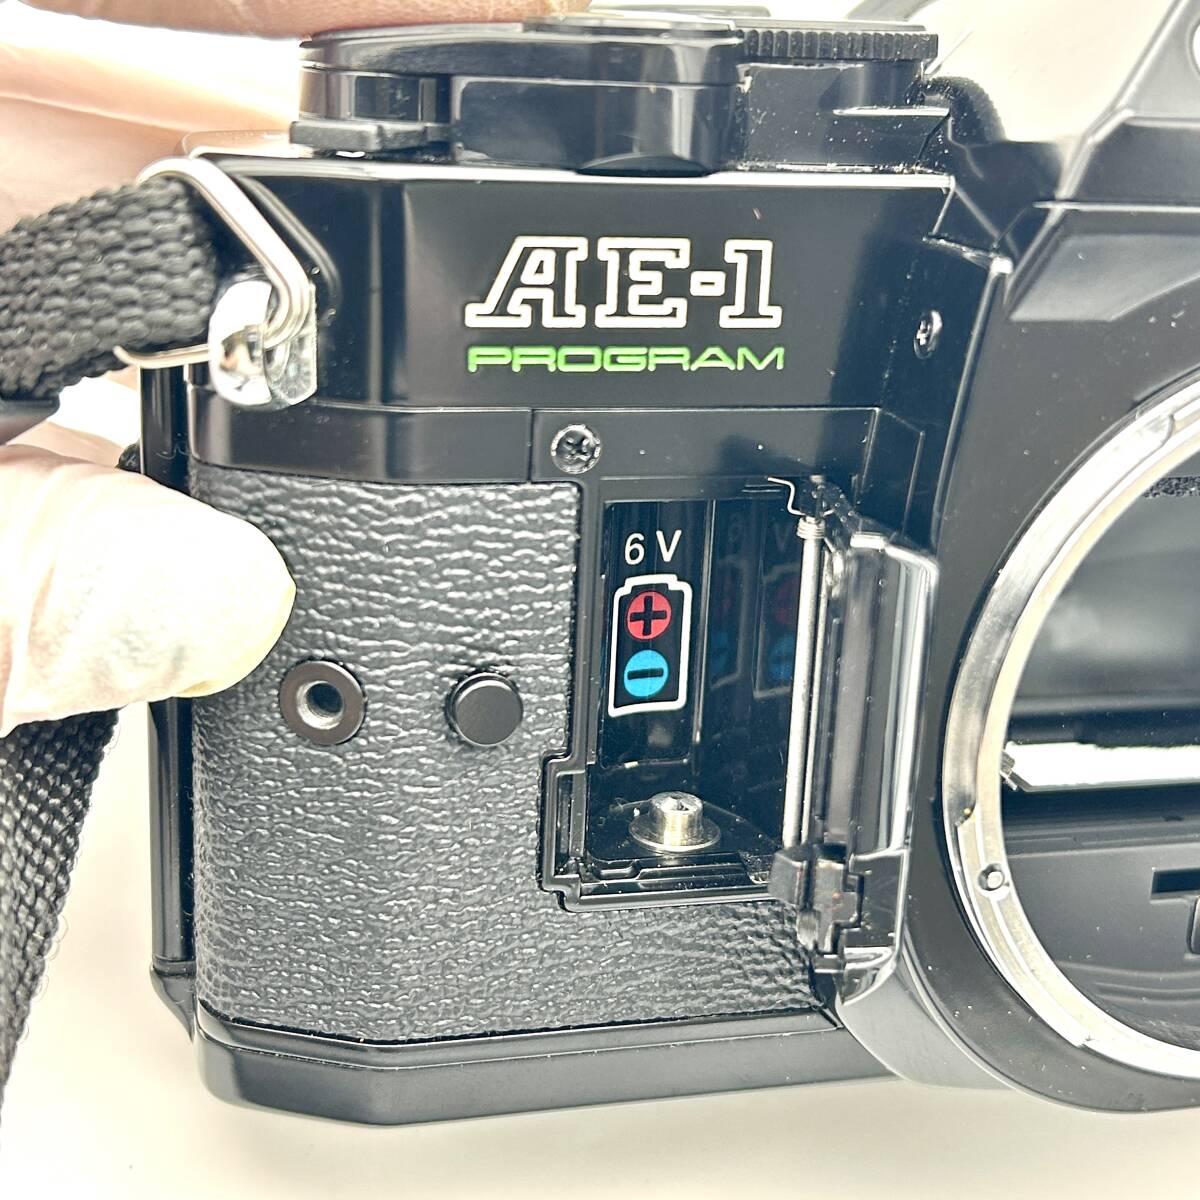 HY1531■【シャッターOK】Canon AE-1 PROGRAM ブラック ズームレンズ 28-55mm 1:3.5-4.5 POWER WINDER A2 付き カメラ フィルムカメラ _画像9